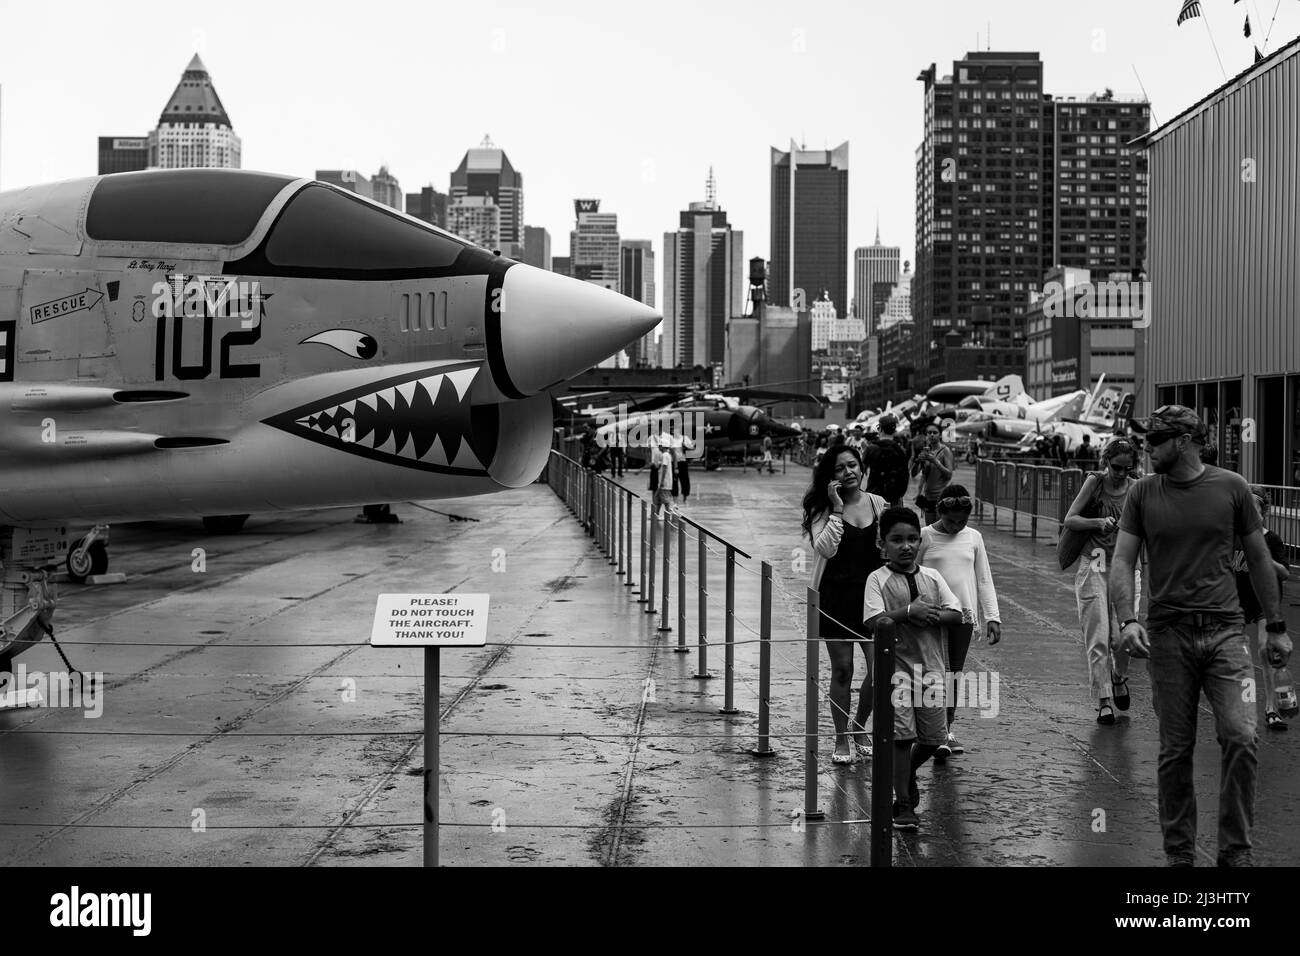 12 Av/W 46 Street, New York City, NY, USA, Una famiglia cammina presso il Fighter Vought F-8K Crusader con base portaerei sul ponte superiore dell'Intrepid Sea, Air & Space Museum - un museo di storia militare e marittima americano espone la portaerei USS Intrepid. Foto Stock